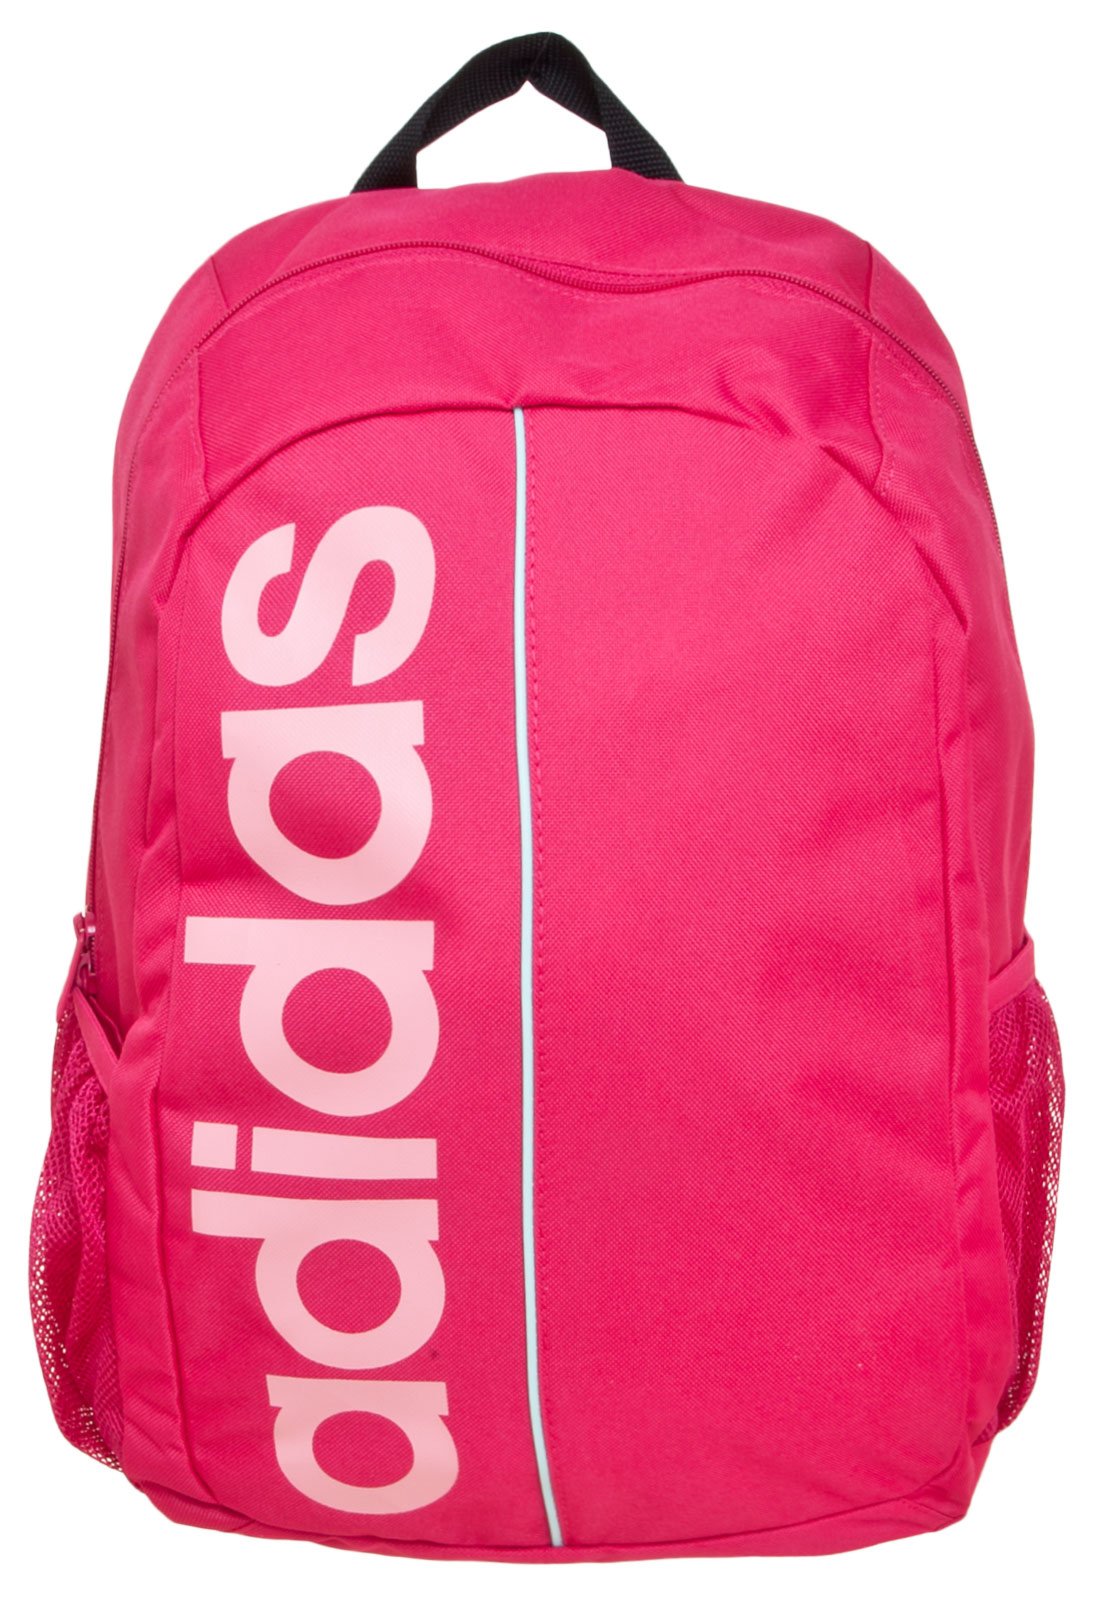 bolsa adidas feminina rosa